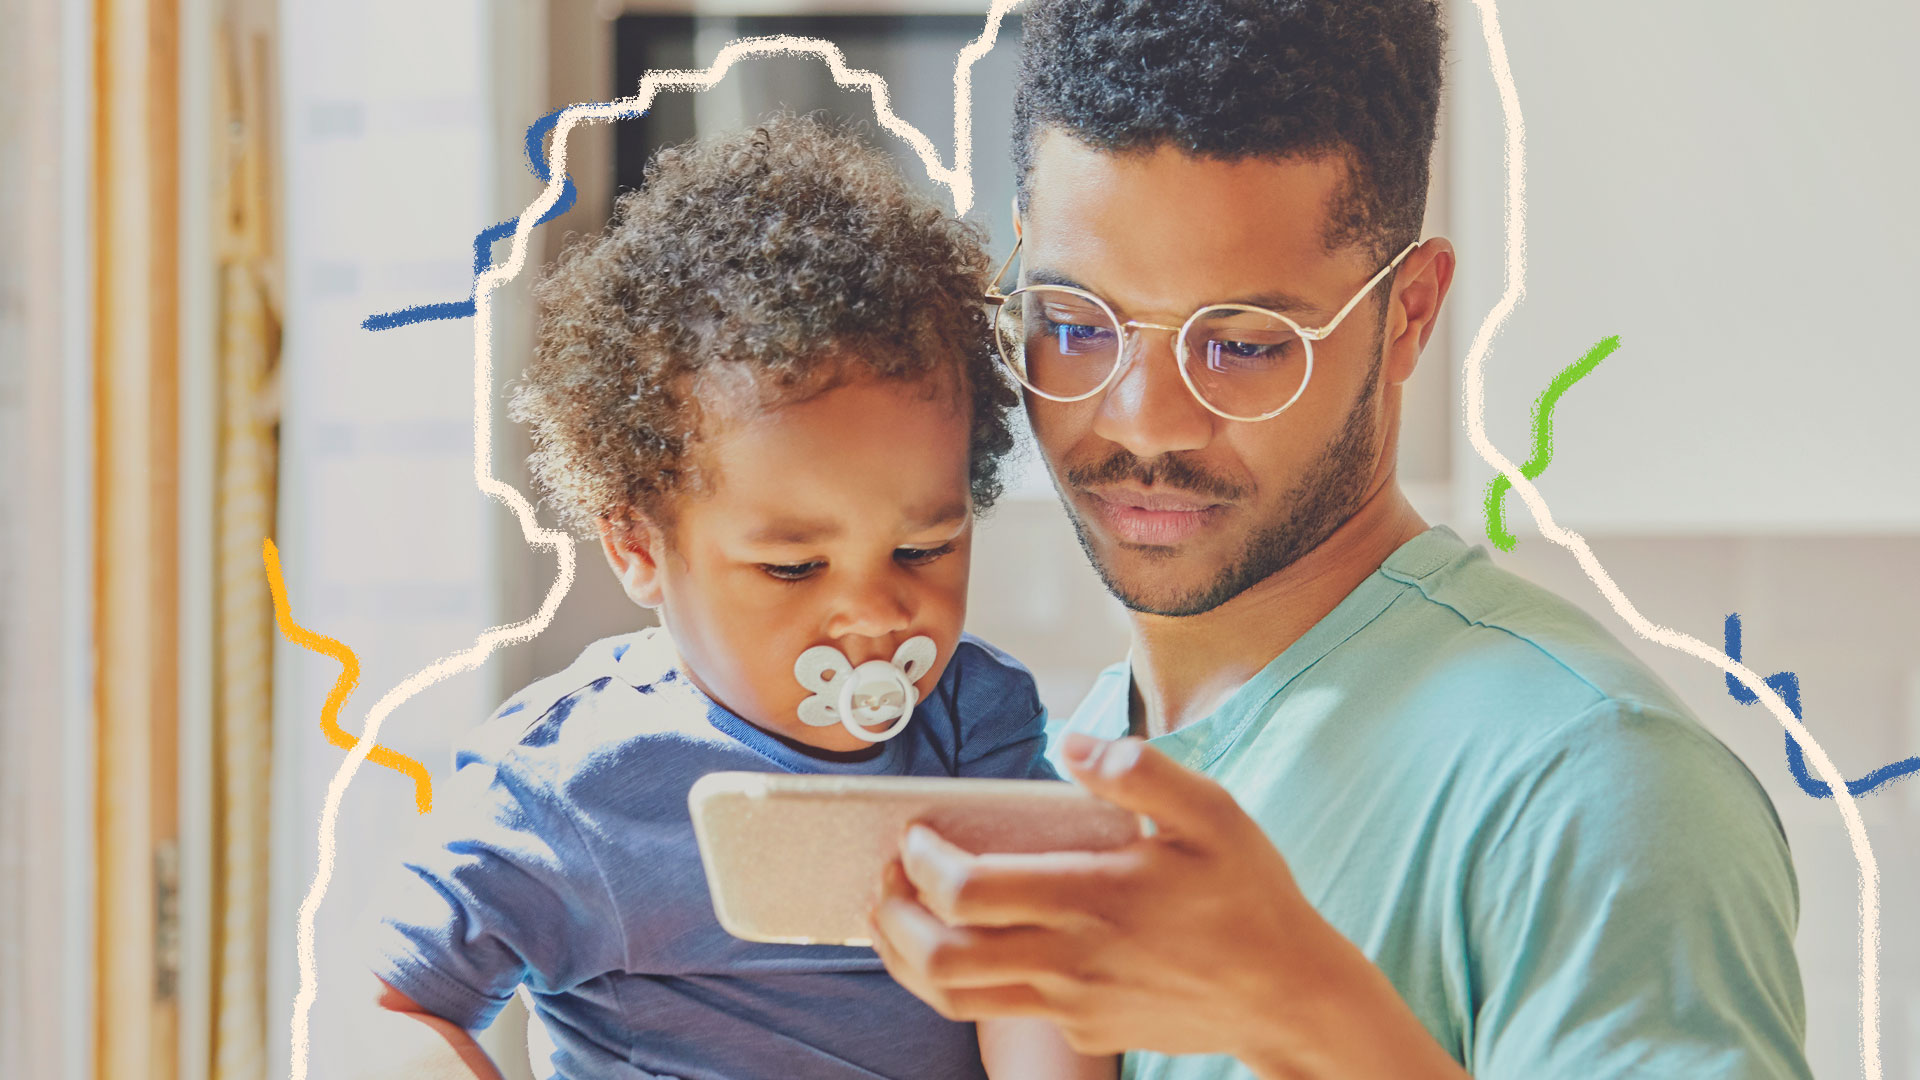 Criança e internet: pai segura bebê no colo e ambos olham para a tela do celular. O menino está com chupeta na boca e o adulto usa óculos. Os dois são negros.